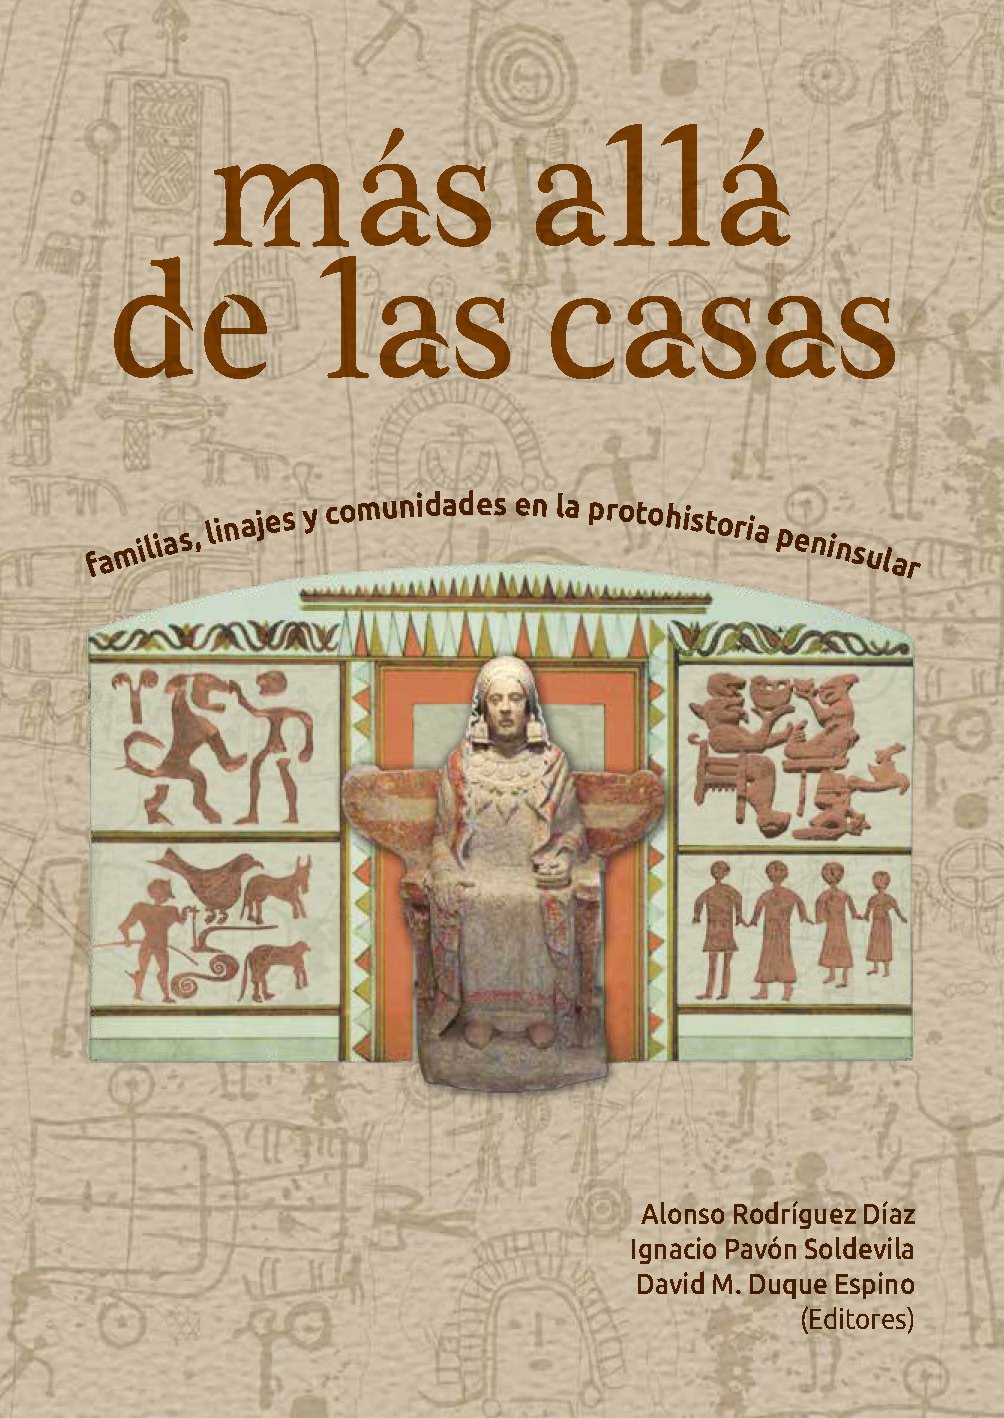 Imagen de portada del libro Más allá de las casas. Familias, linajes y comunidades en la protohistoria peninsular